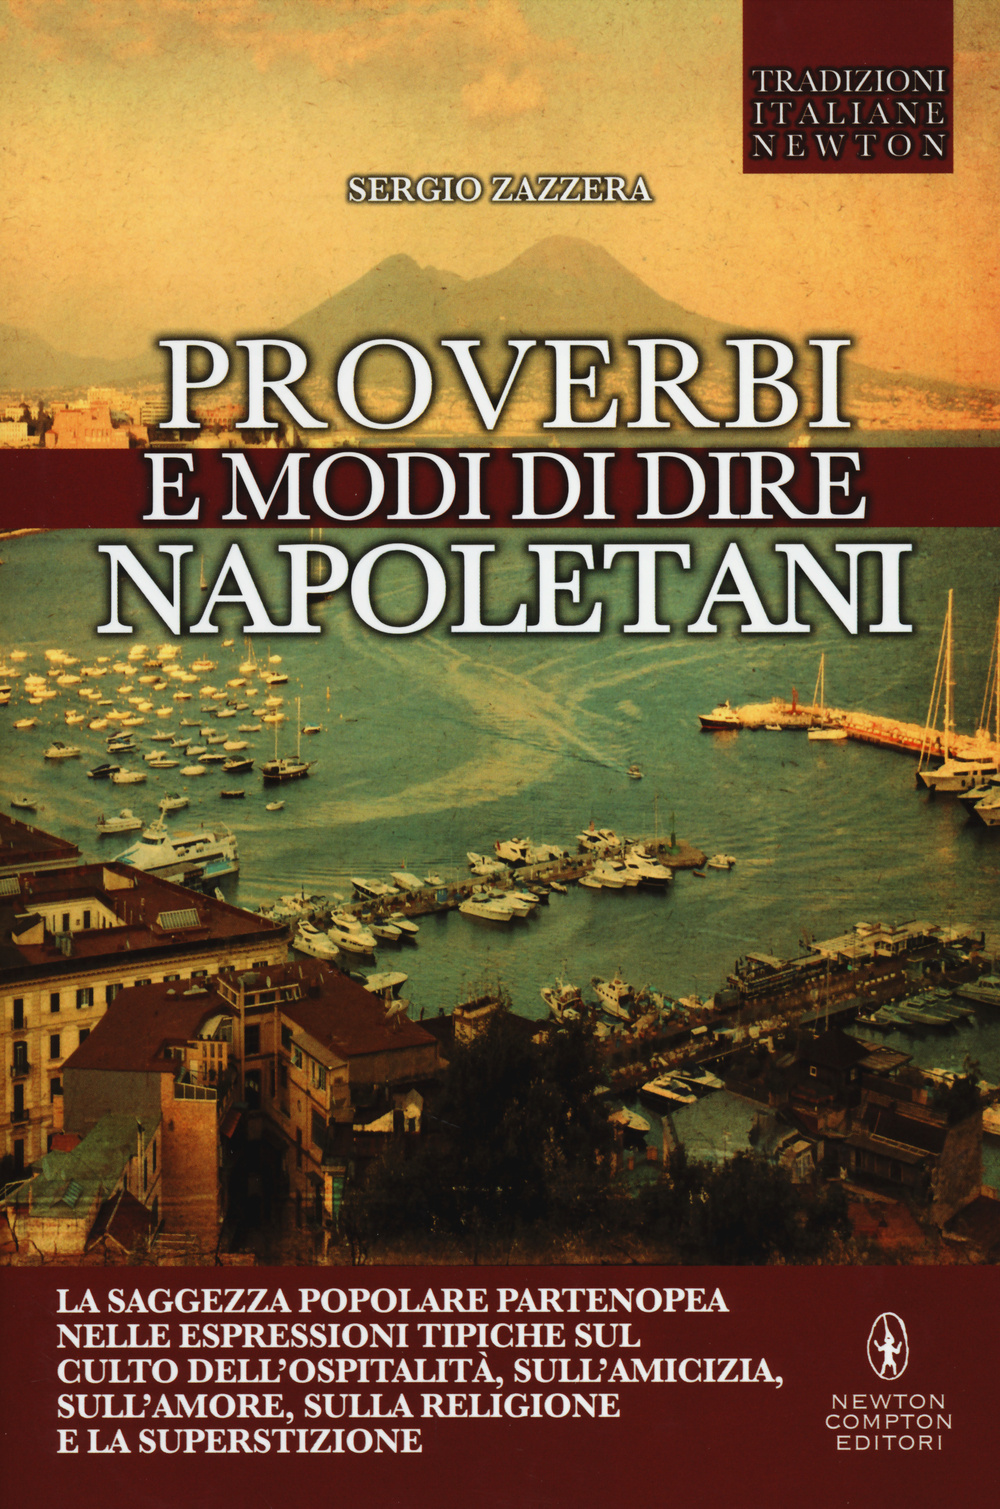 Image of Proverbi e modi di dire napoletani